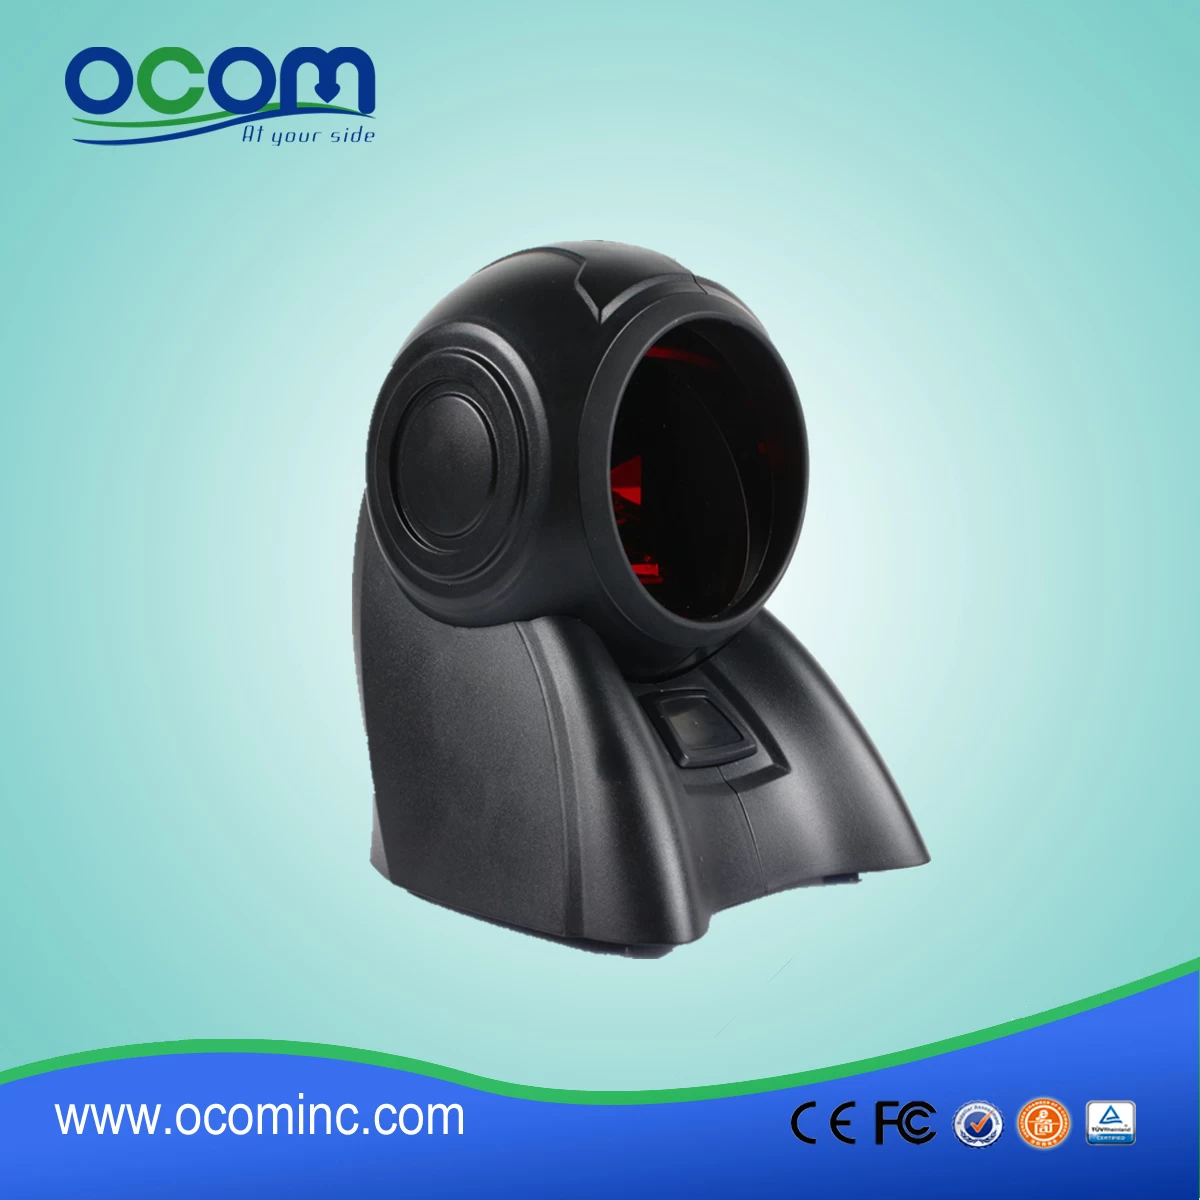 (OCBS-T009) Desktop Omni-directional Barcode Scanner